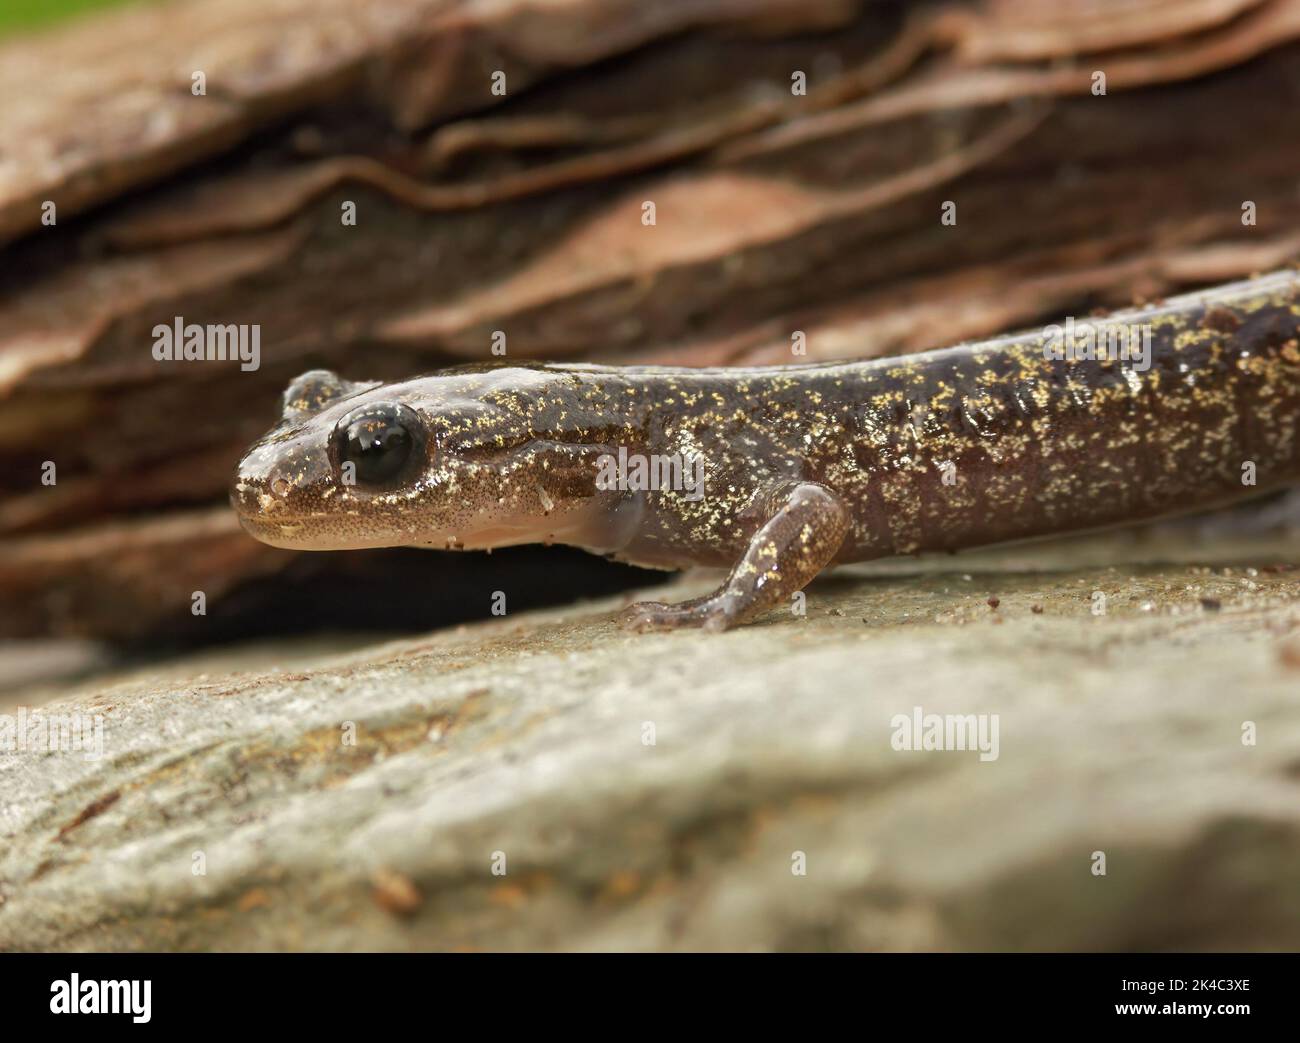 Closeup on a brassy colored juvenile Japanese Hokkaido salamander, Hynobius retardatus on a stone Stock Photo